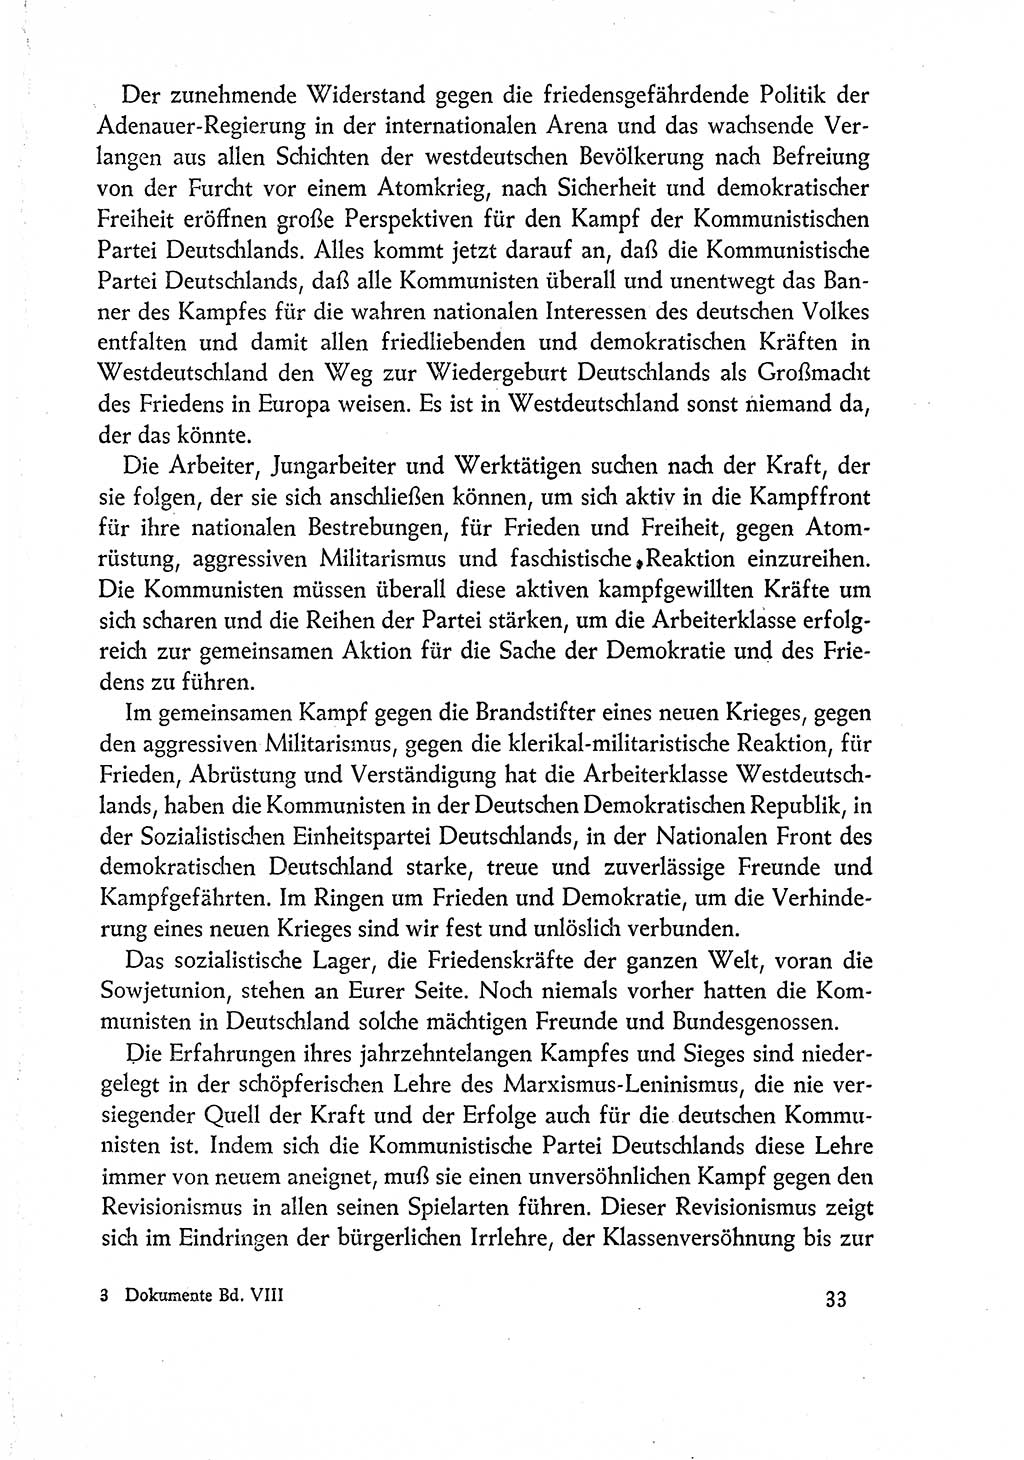 Dokumente der Sozialistischen Einheitspartei Deutschlands (SED) [Deutsche Demokratische Republik (DDR)] 1960-1961, Seite 33 (Dok. SED DDR 1960-1961, S. 33)